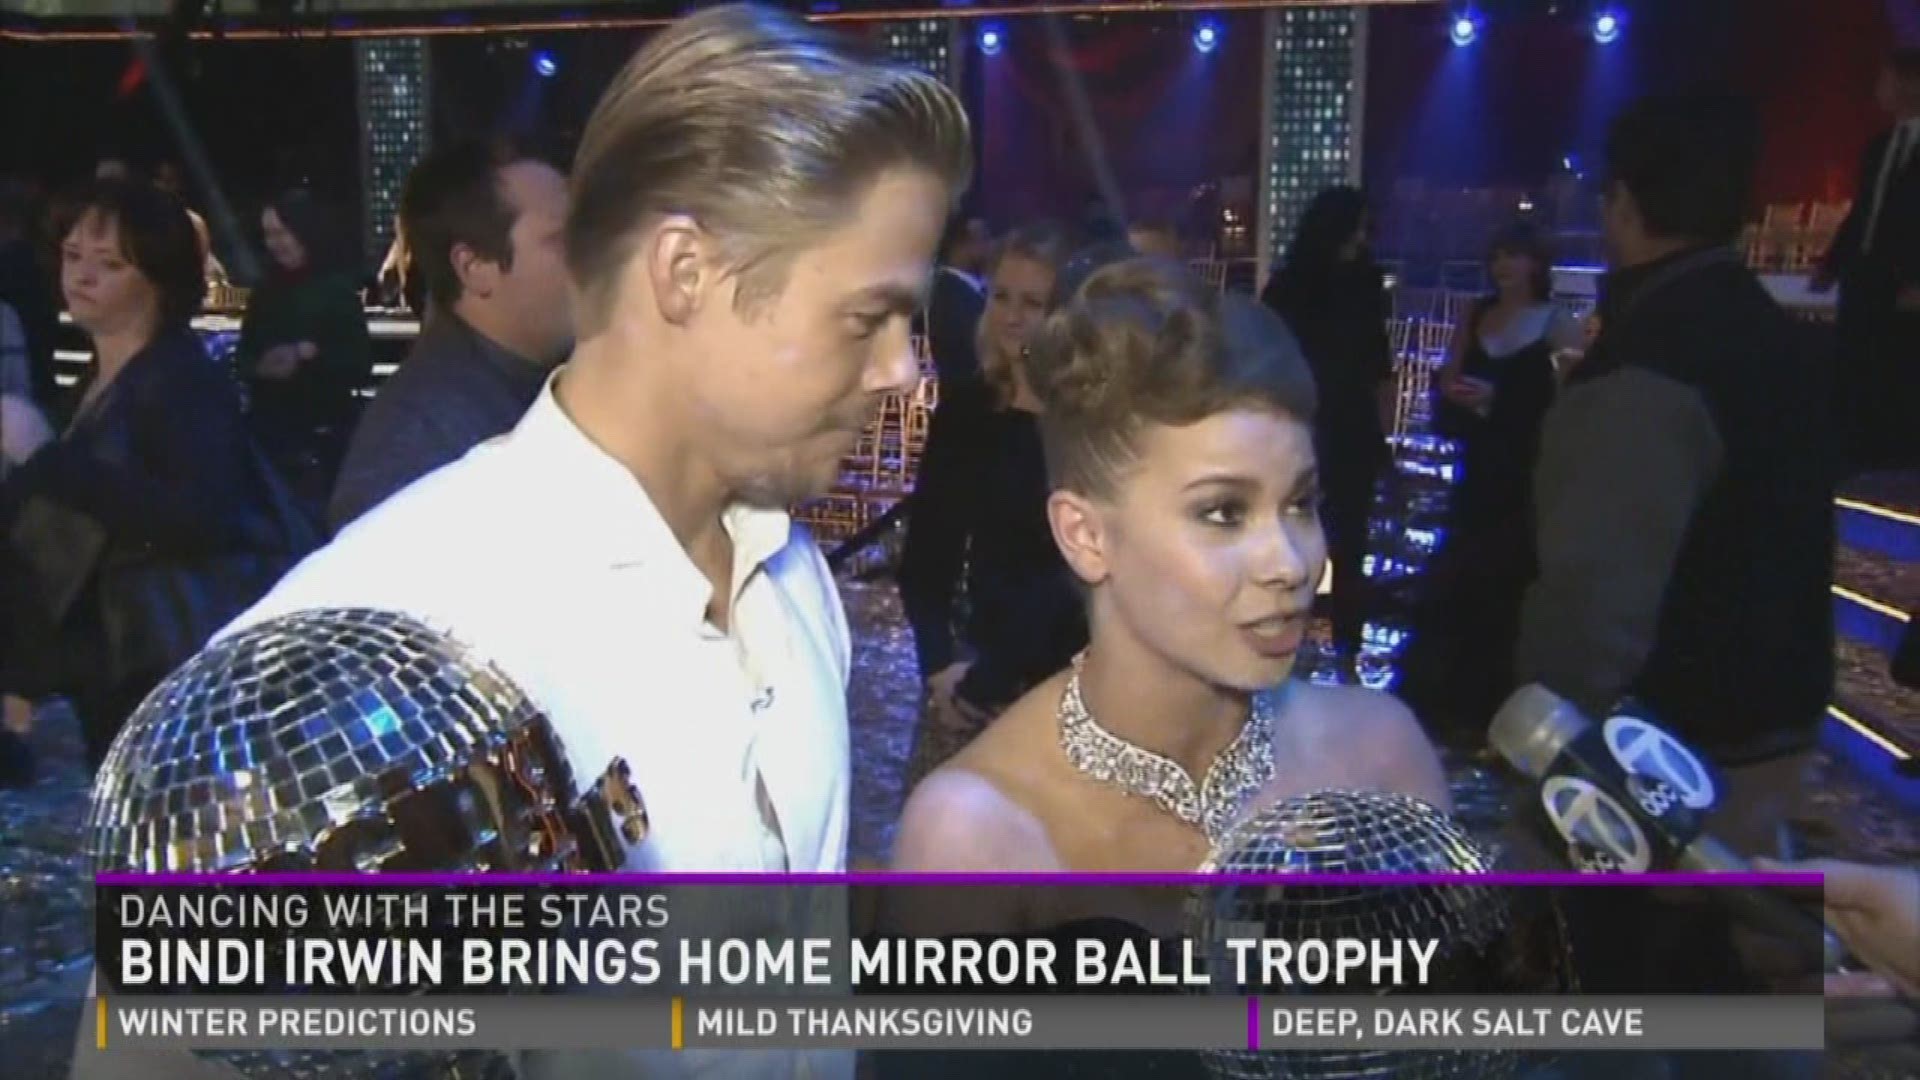 Bindi Irwin brings home mirror ball trophy